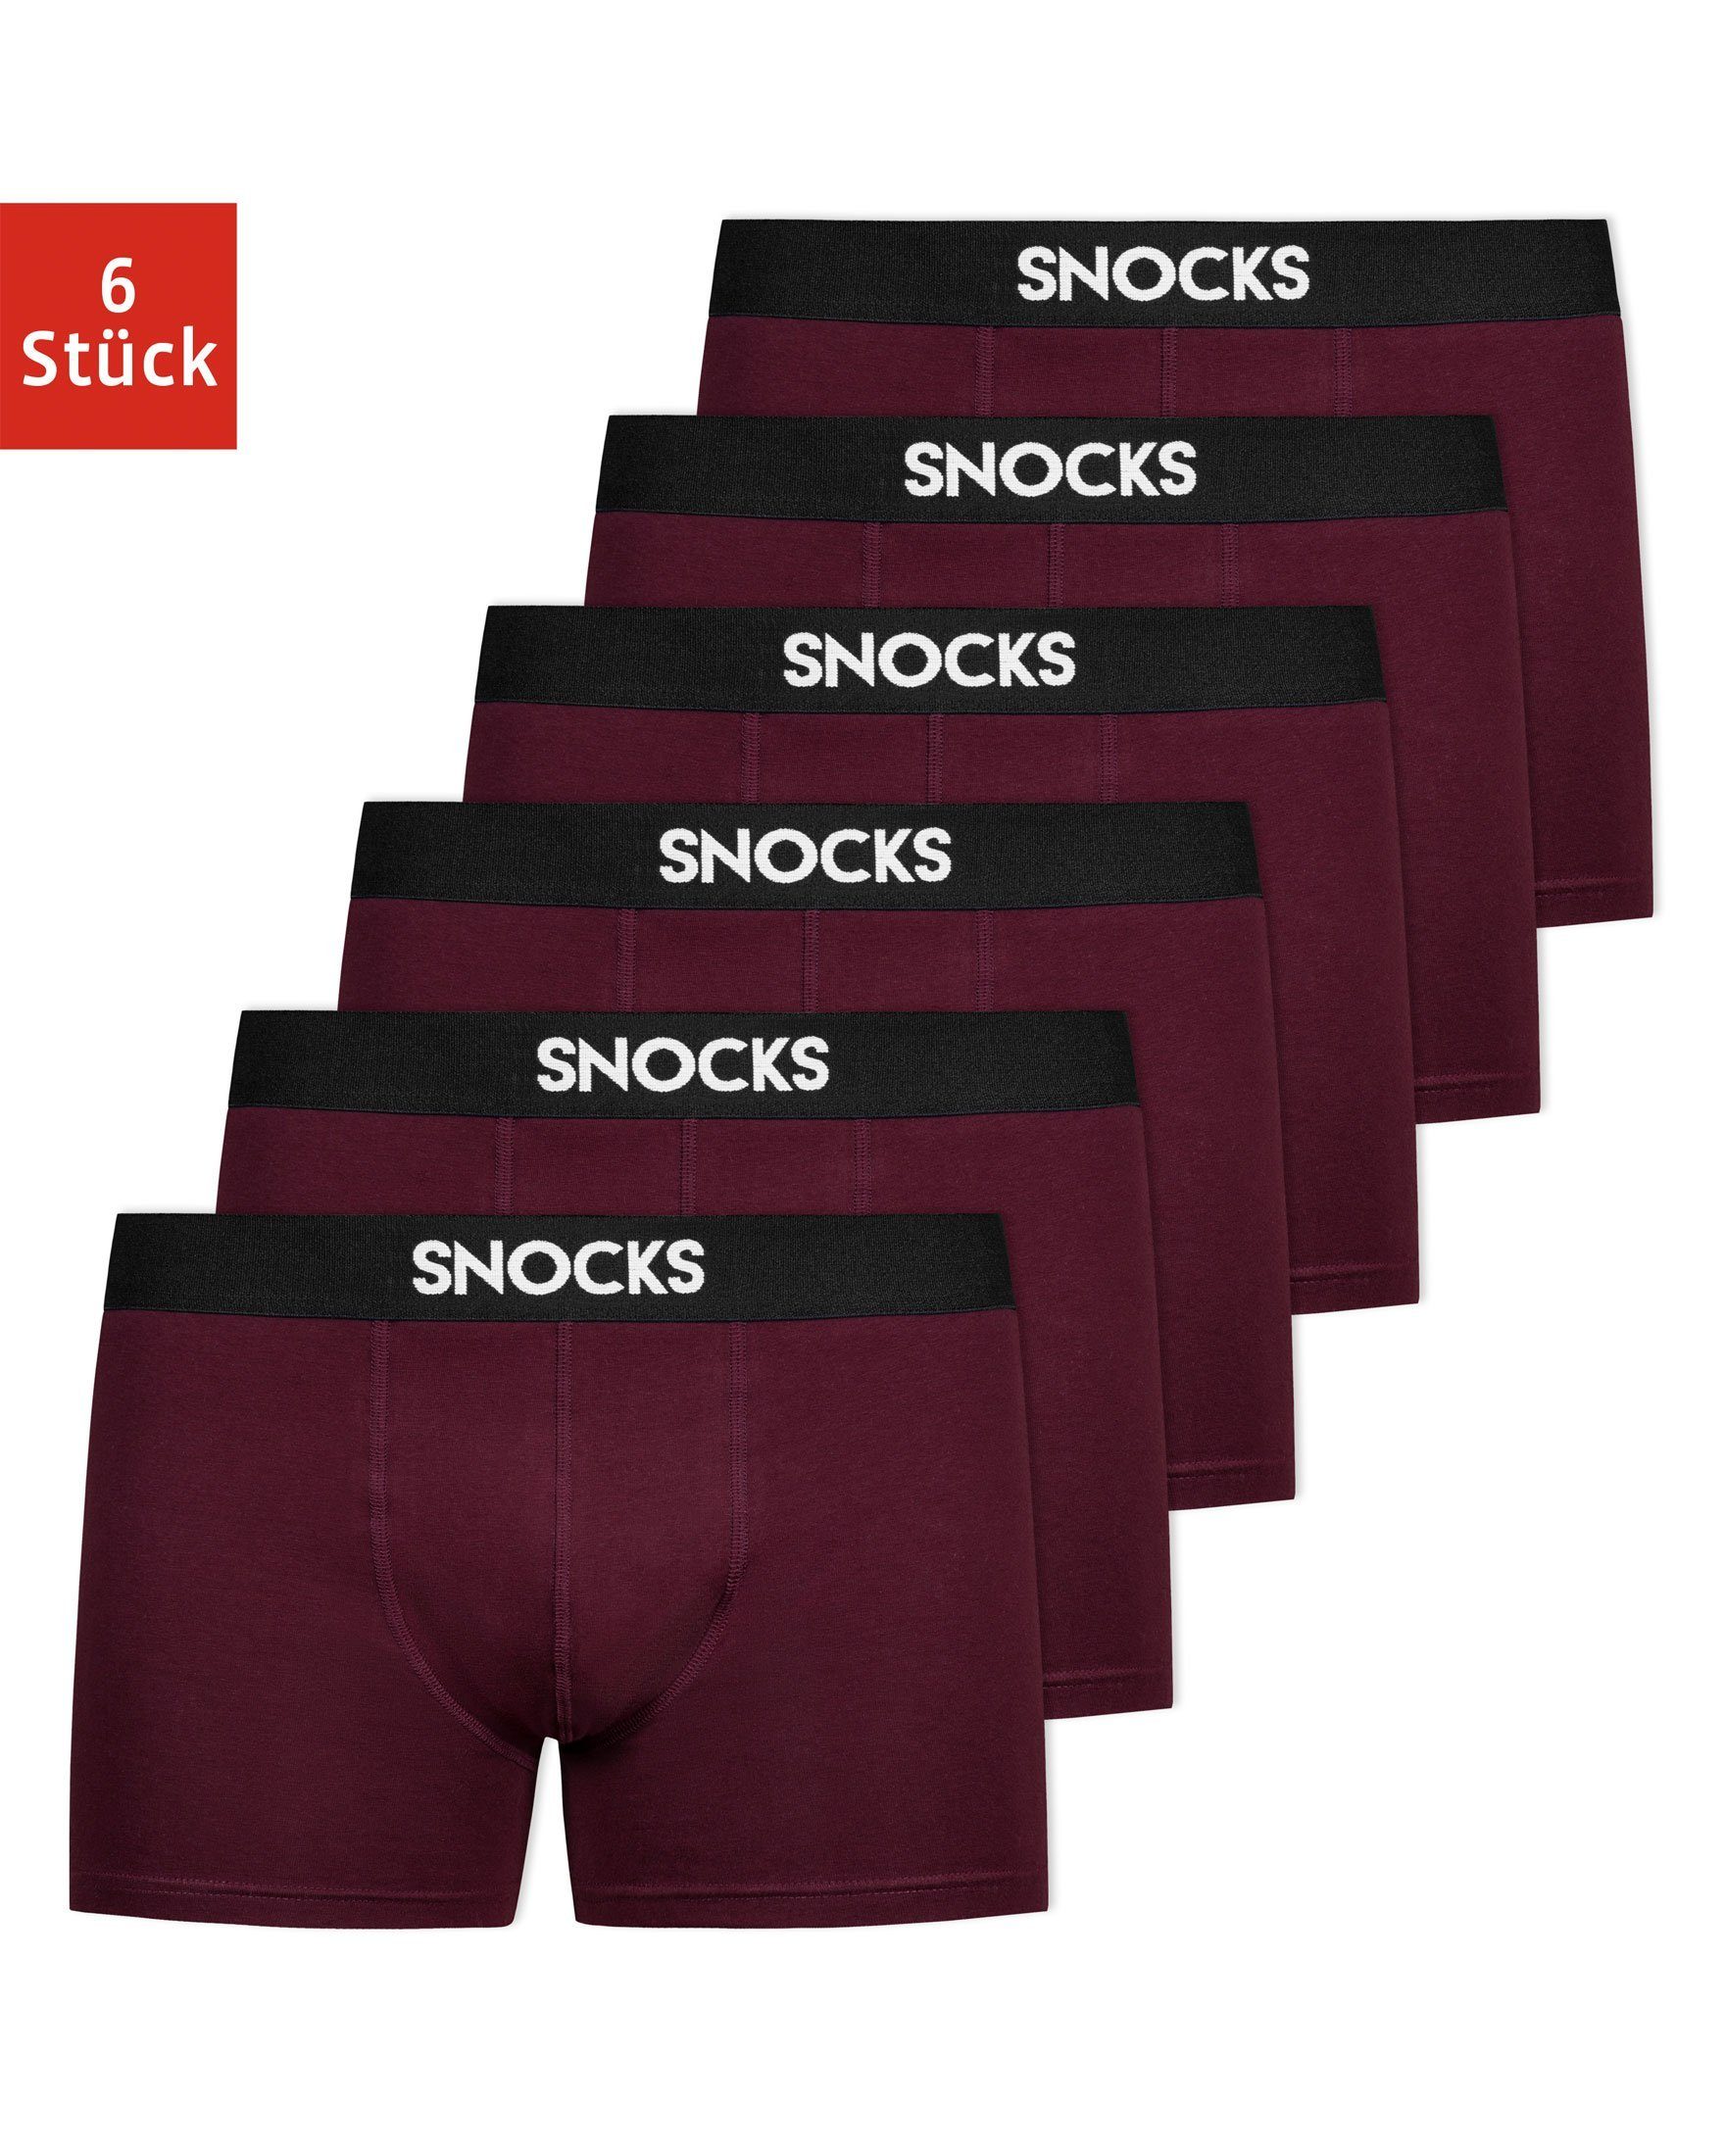 SNOCKS Boxershorts »Enge Unterhosen Herren Männer« (6 Stück) aus  Bio-Baumwolle, ohne kratzenden Zettel online kaufen | OTTO